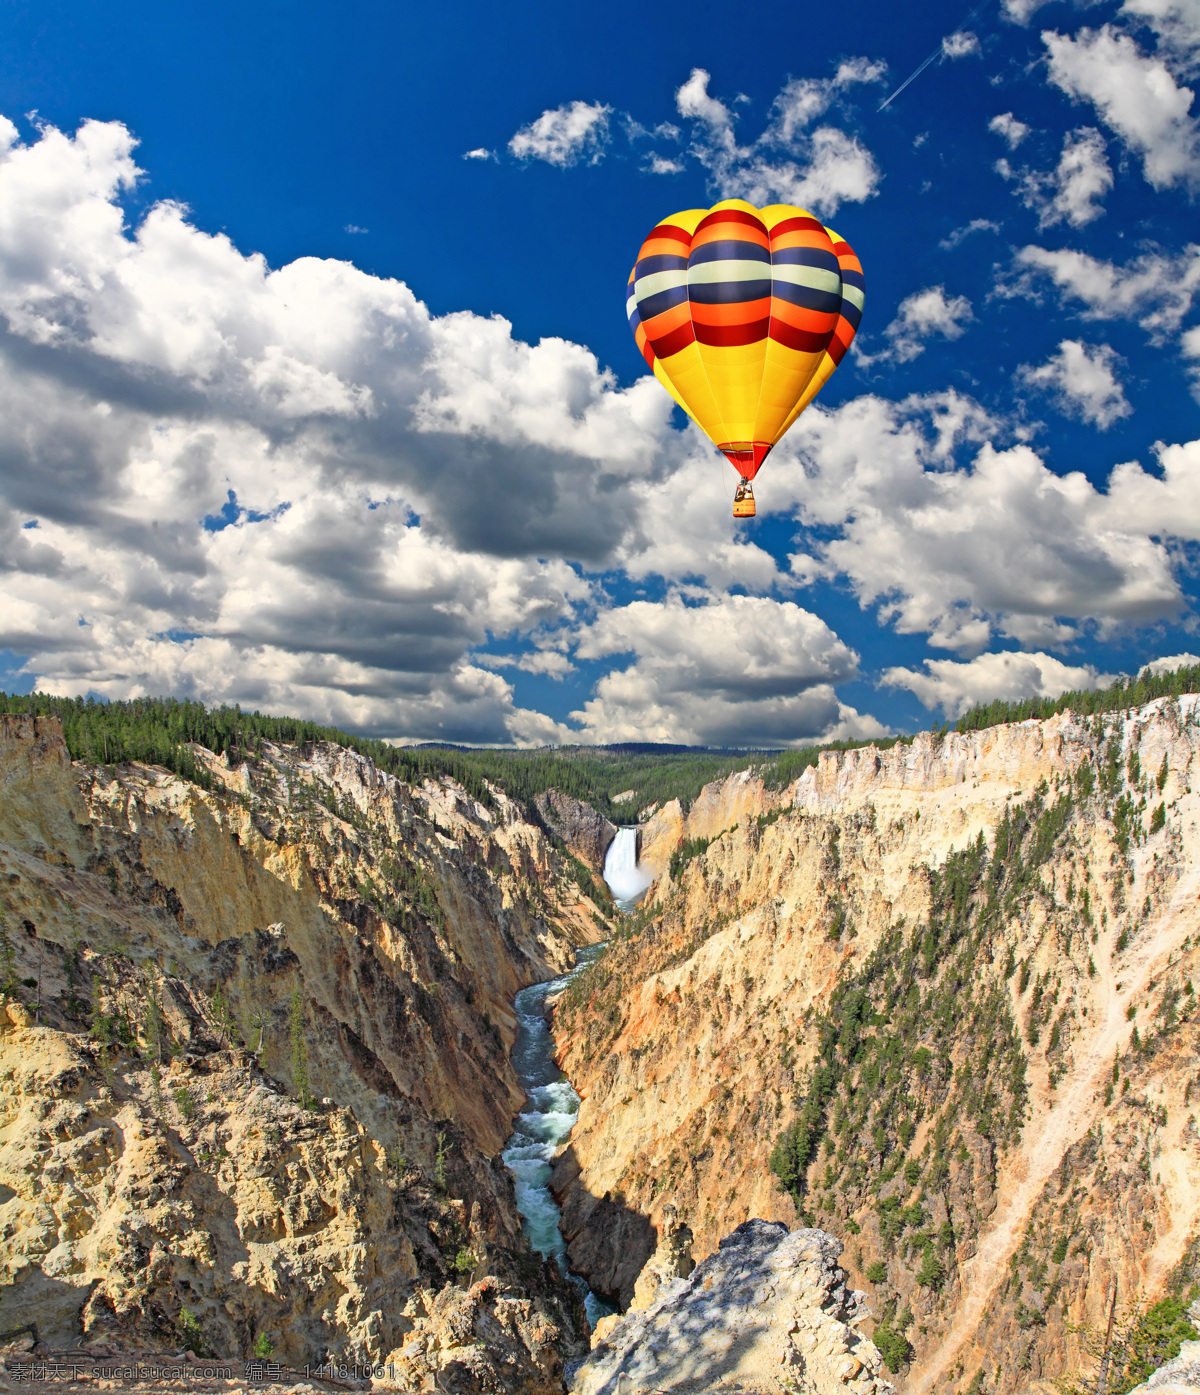 峡谷 上 空中 热气球 蓝天白云 天空 飞翔 风景 风光 景色 美景 摄影图 高清图片 其他类别 生活百科